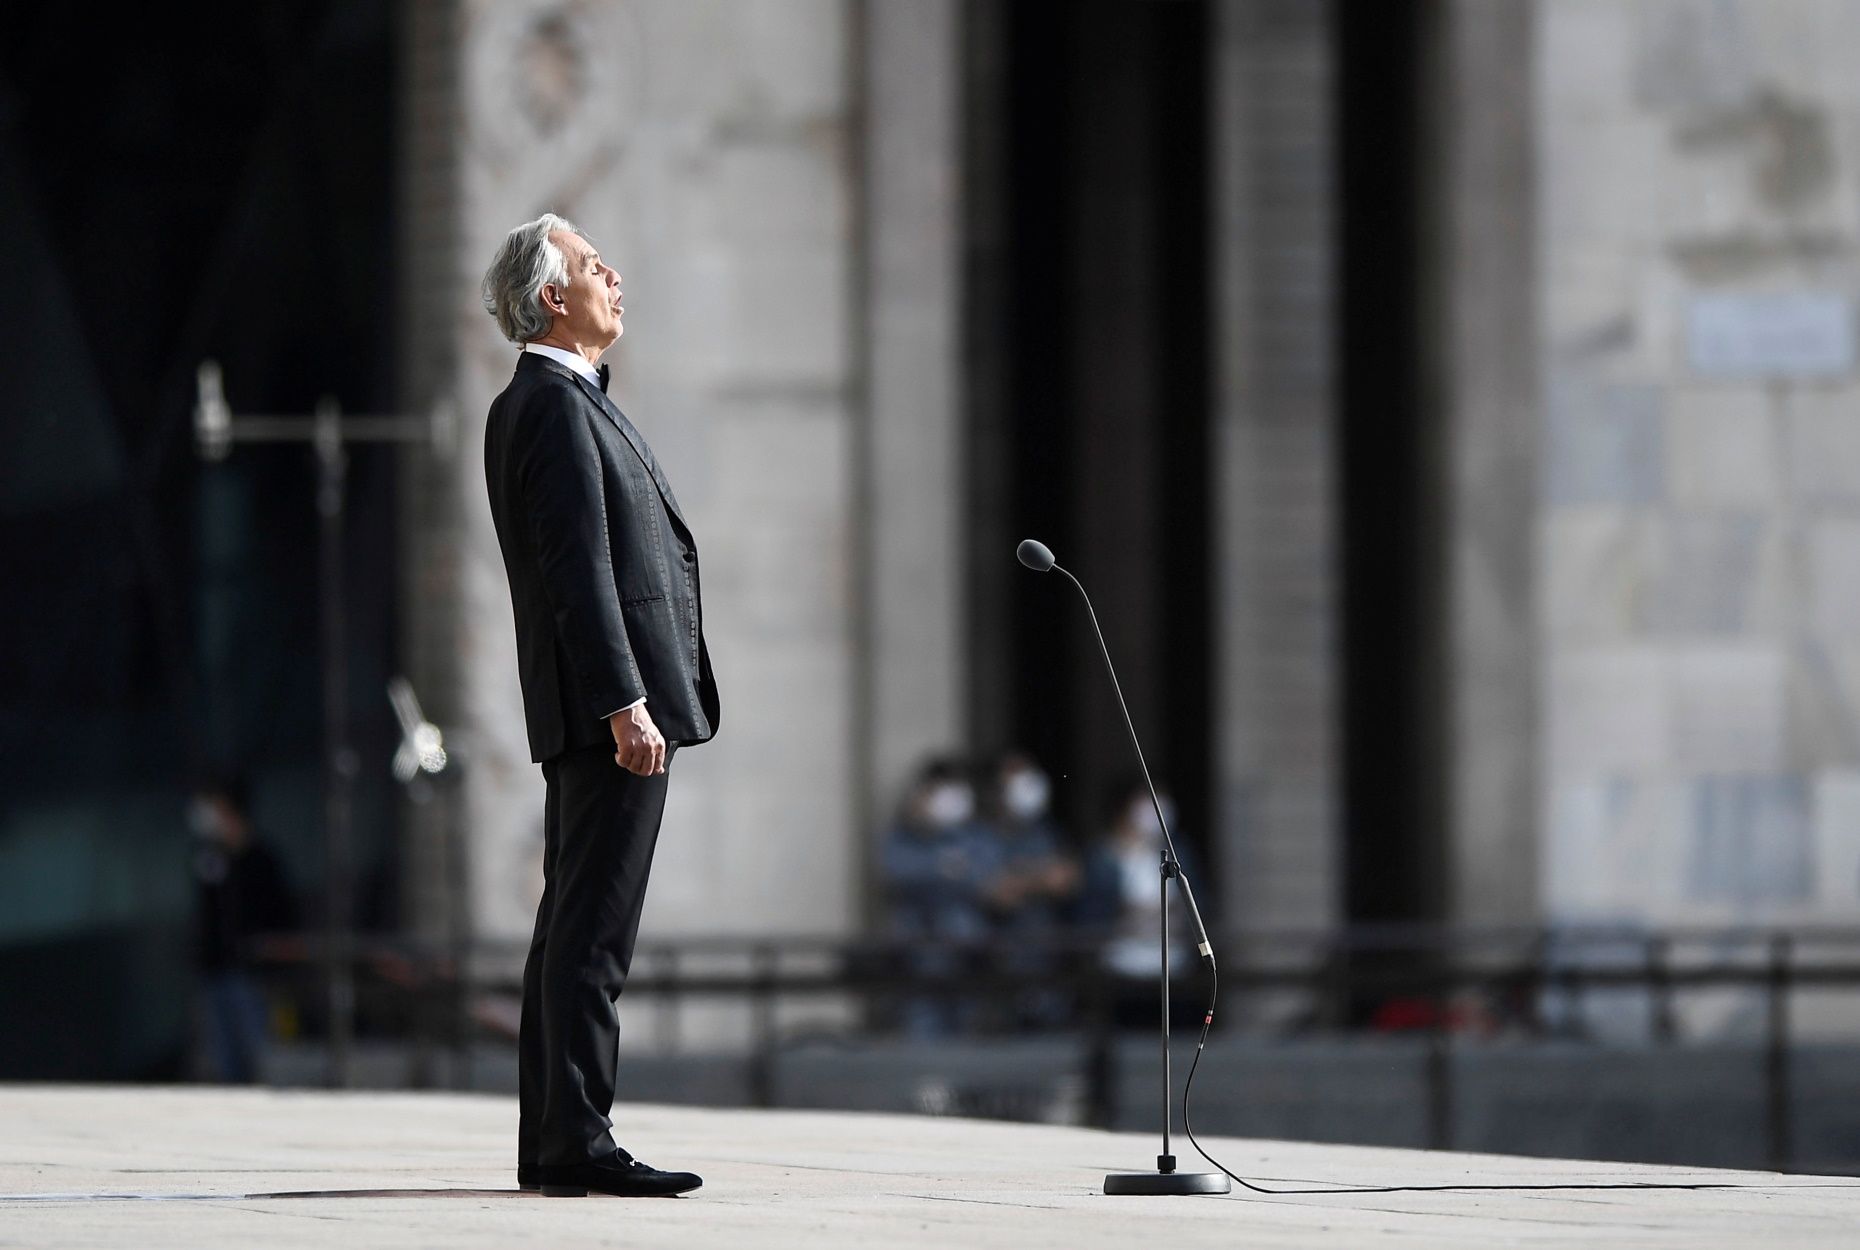 Υπέροχη φωνή ελπίδας! Ο Andrea Bocelli τραγούδησε στον άδειο καθεδρικό του Ντουόμο στο Μιλάνο (video)